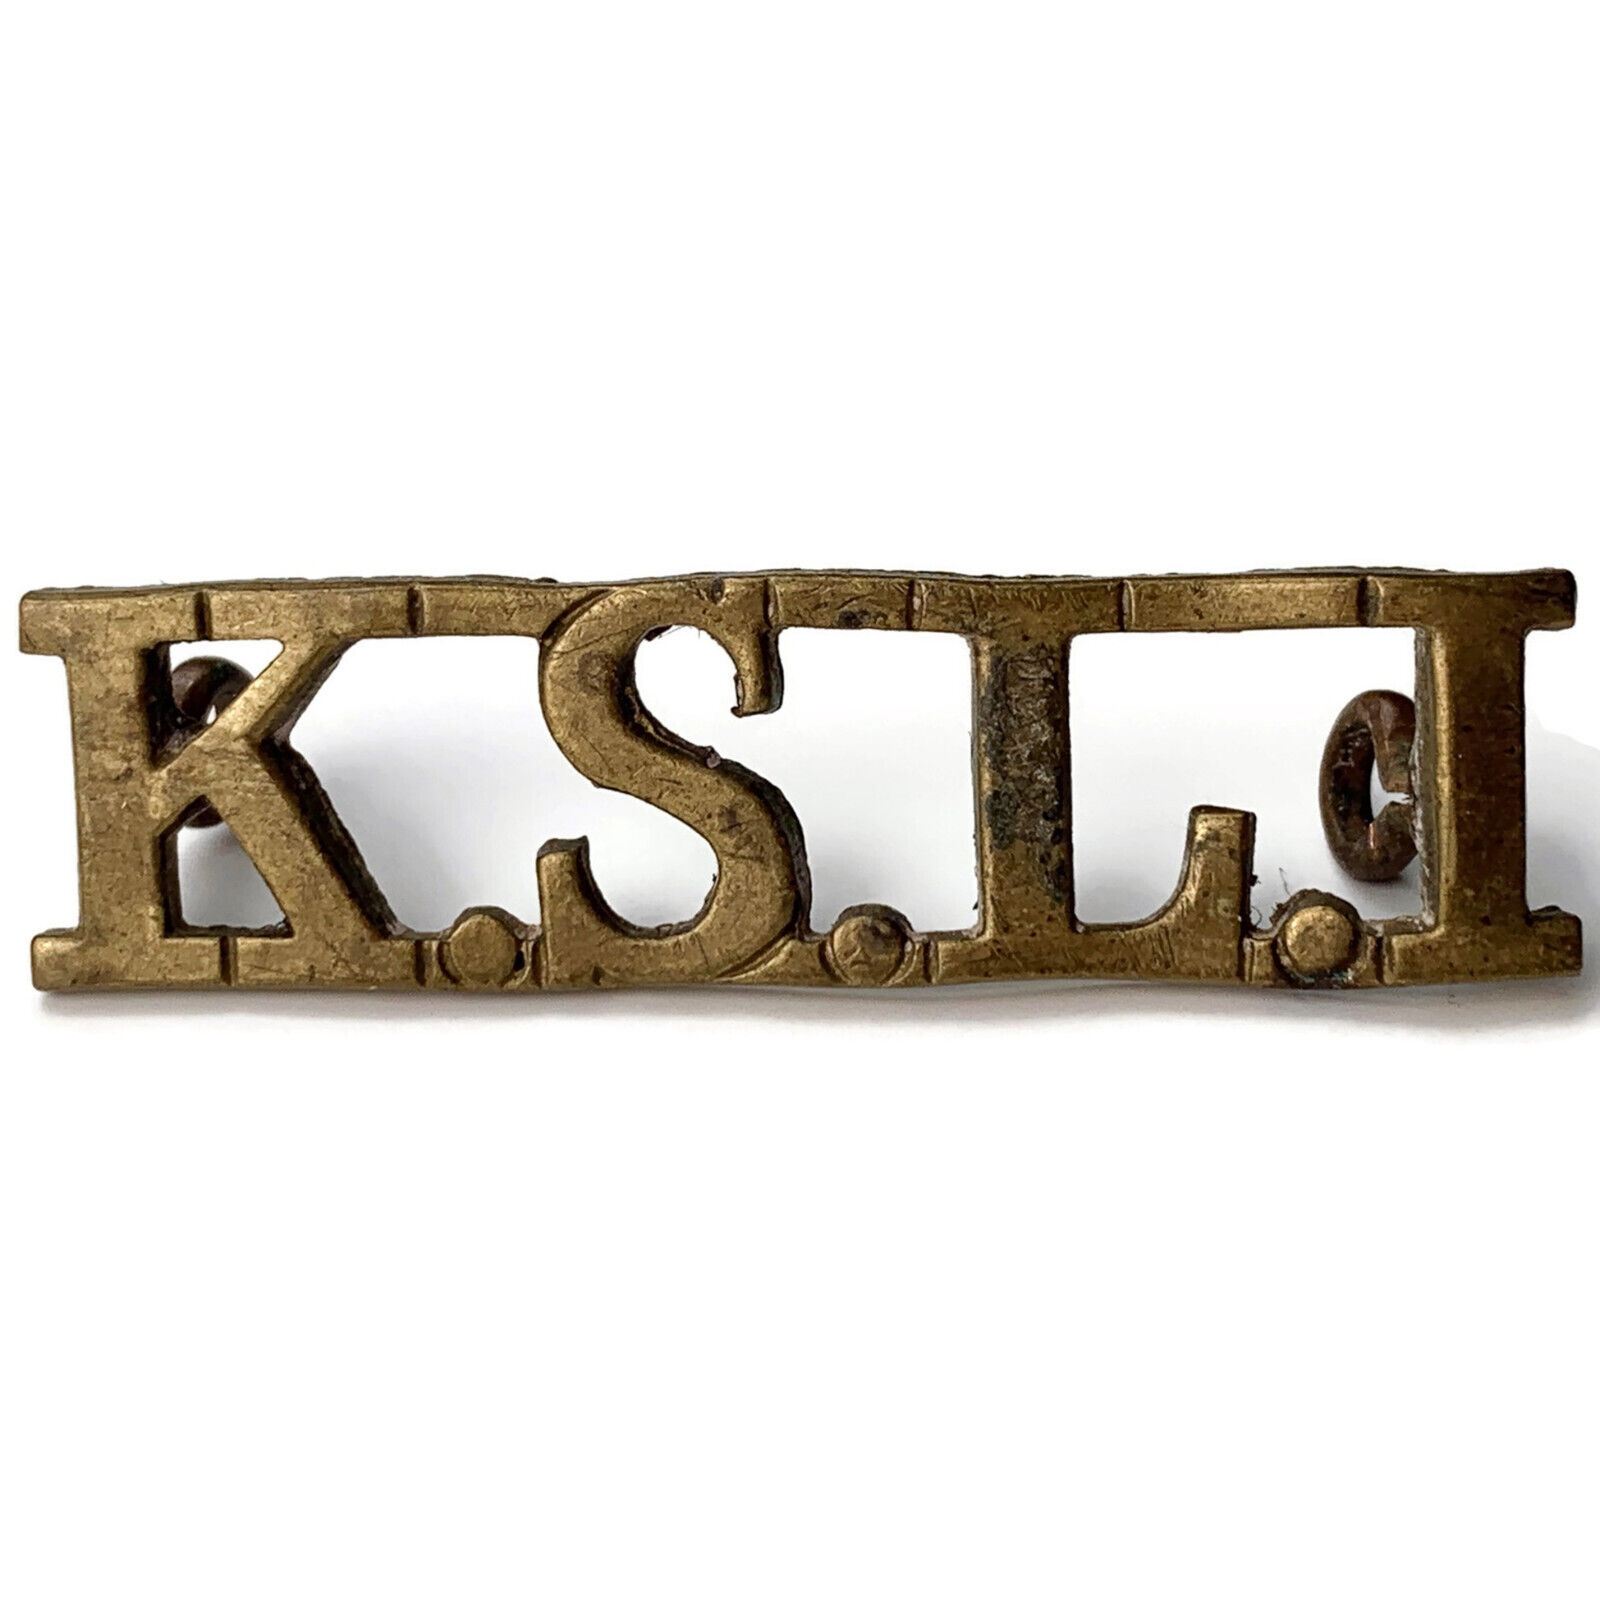 Original Kings Shropshire Light Infantry Regiment KSLI Shoulder Title Badge